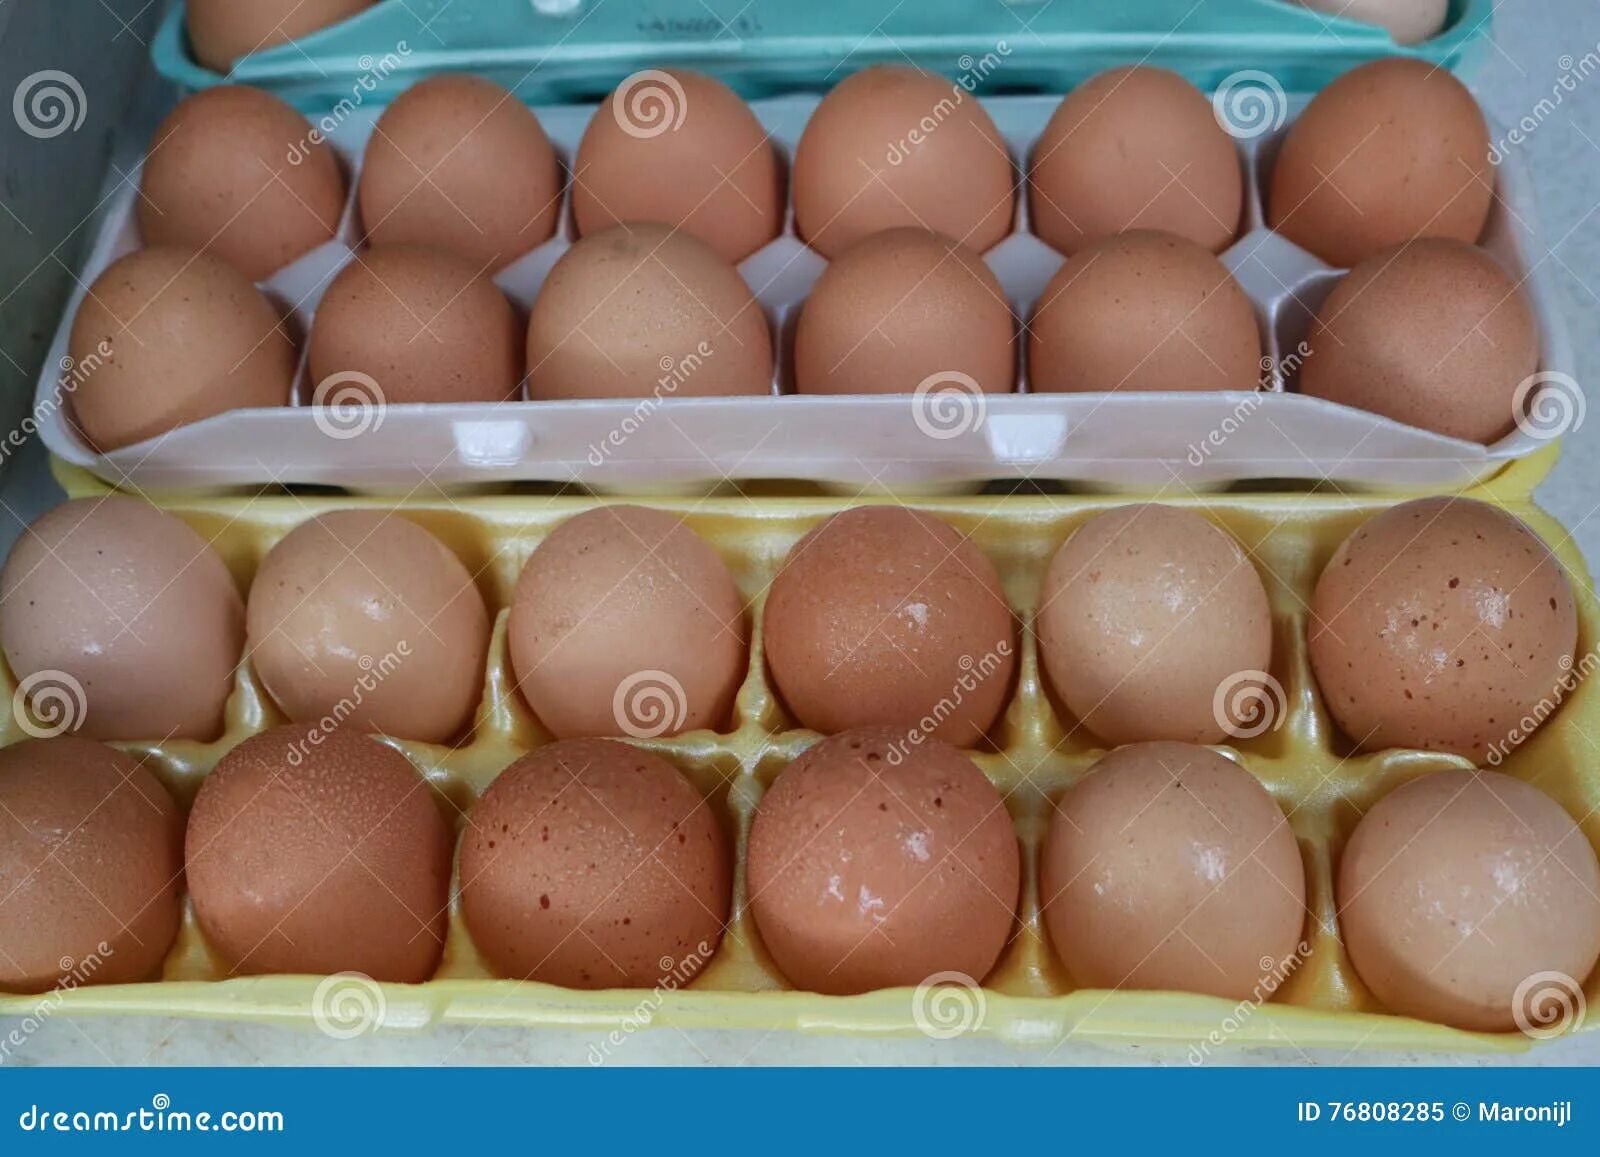 Сколько стоит мужское яйцо цена. Стоимость человеческого яйца.